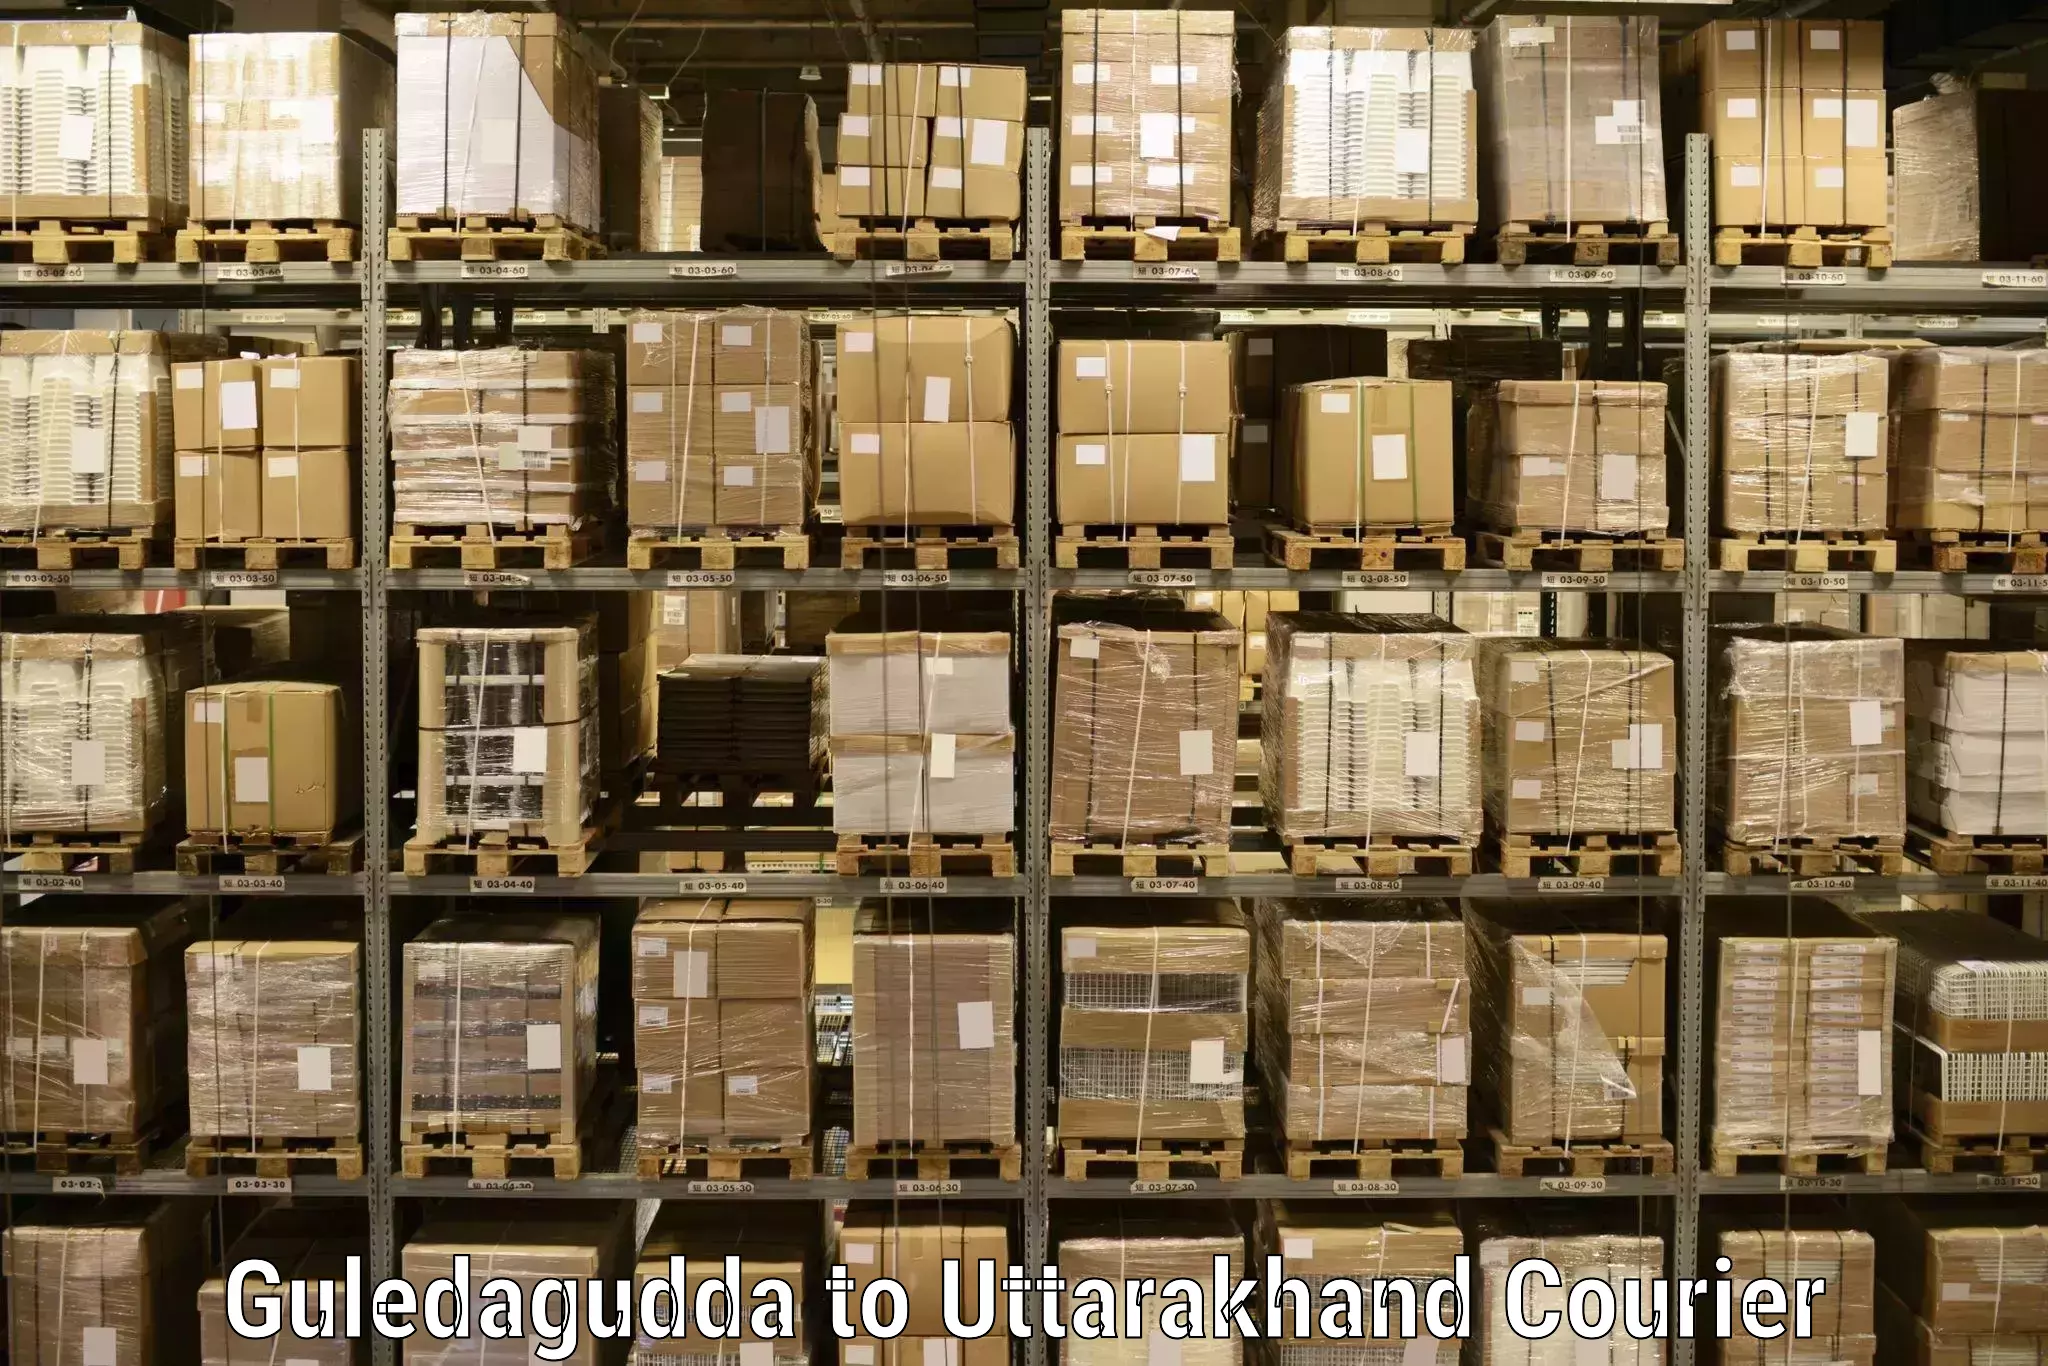 Global shipping networks Guledagudda to Kotdwara